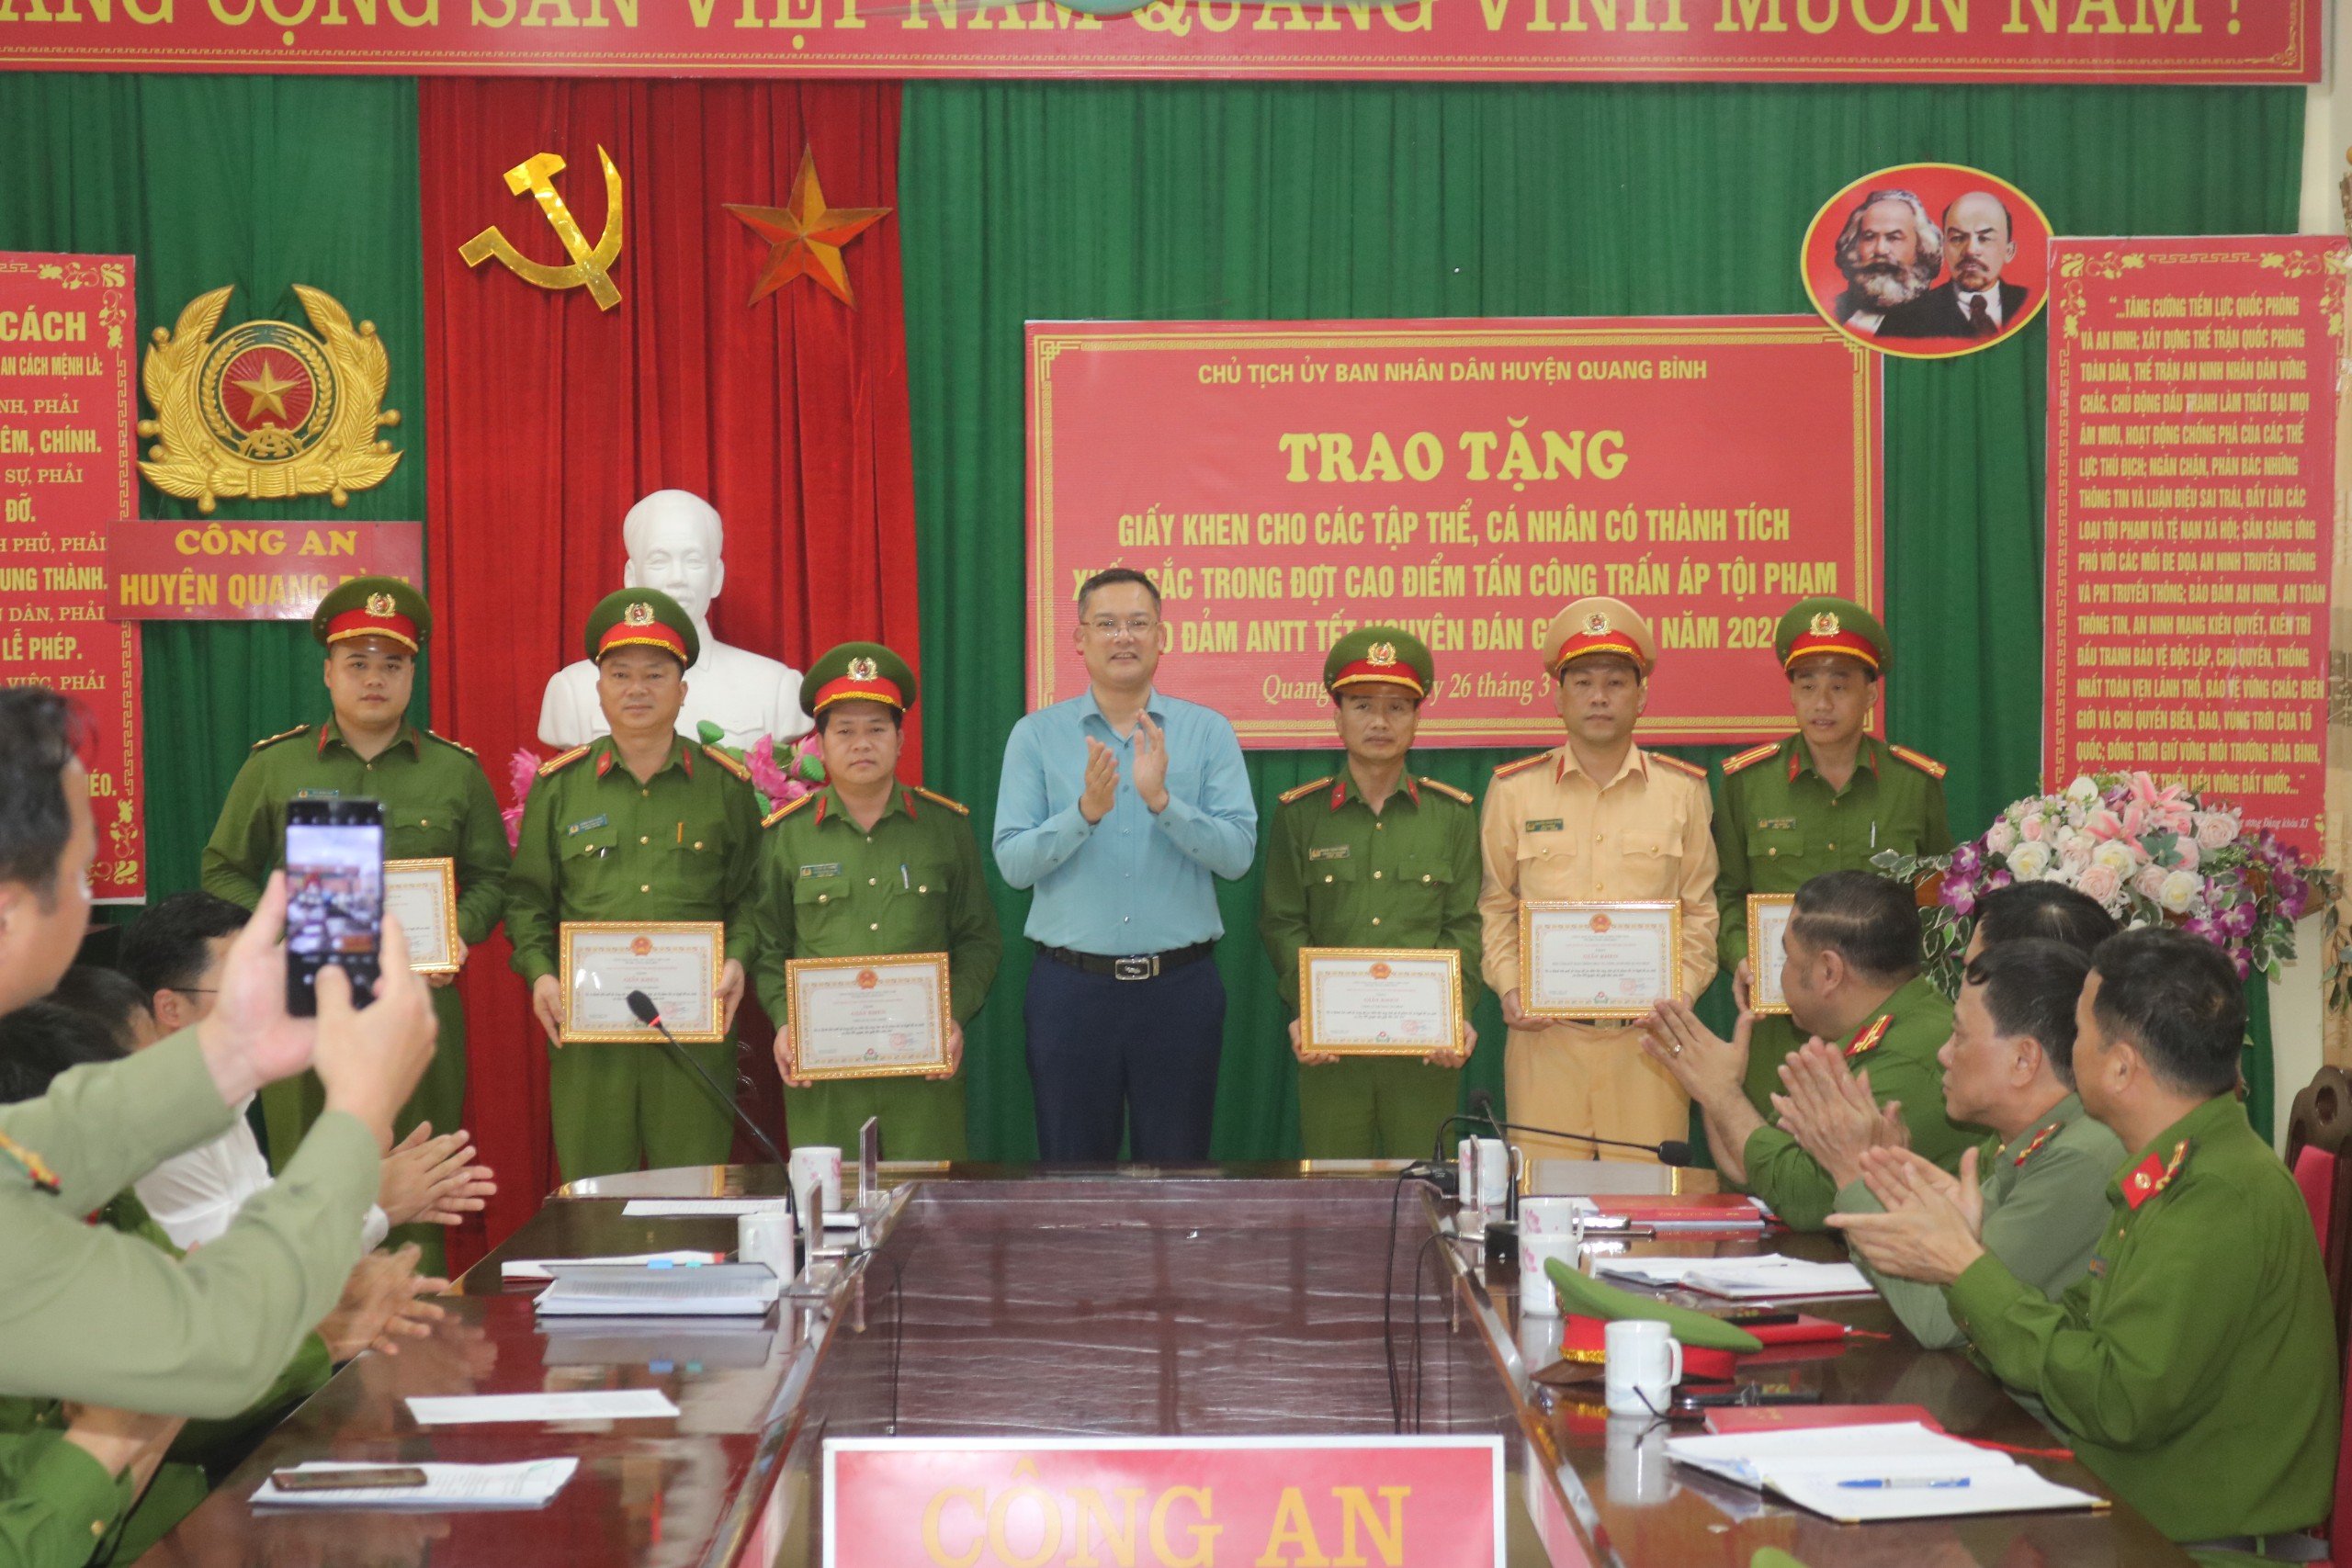 Chủ tịch UBND huyện Quang Bình – Đào Quang Diệu tặng Giấy khen cho các tập thể, cá nhân có thành tích xuất sắc trong đợt cao điểm tấn công trấn áp tội phạm, bảo đảm ANTT Tết Nguyên đán Giáp Thìn năm 2024